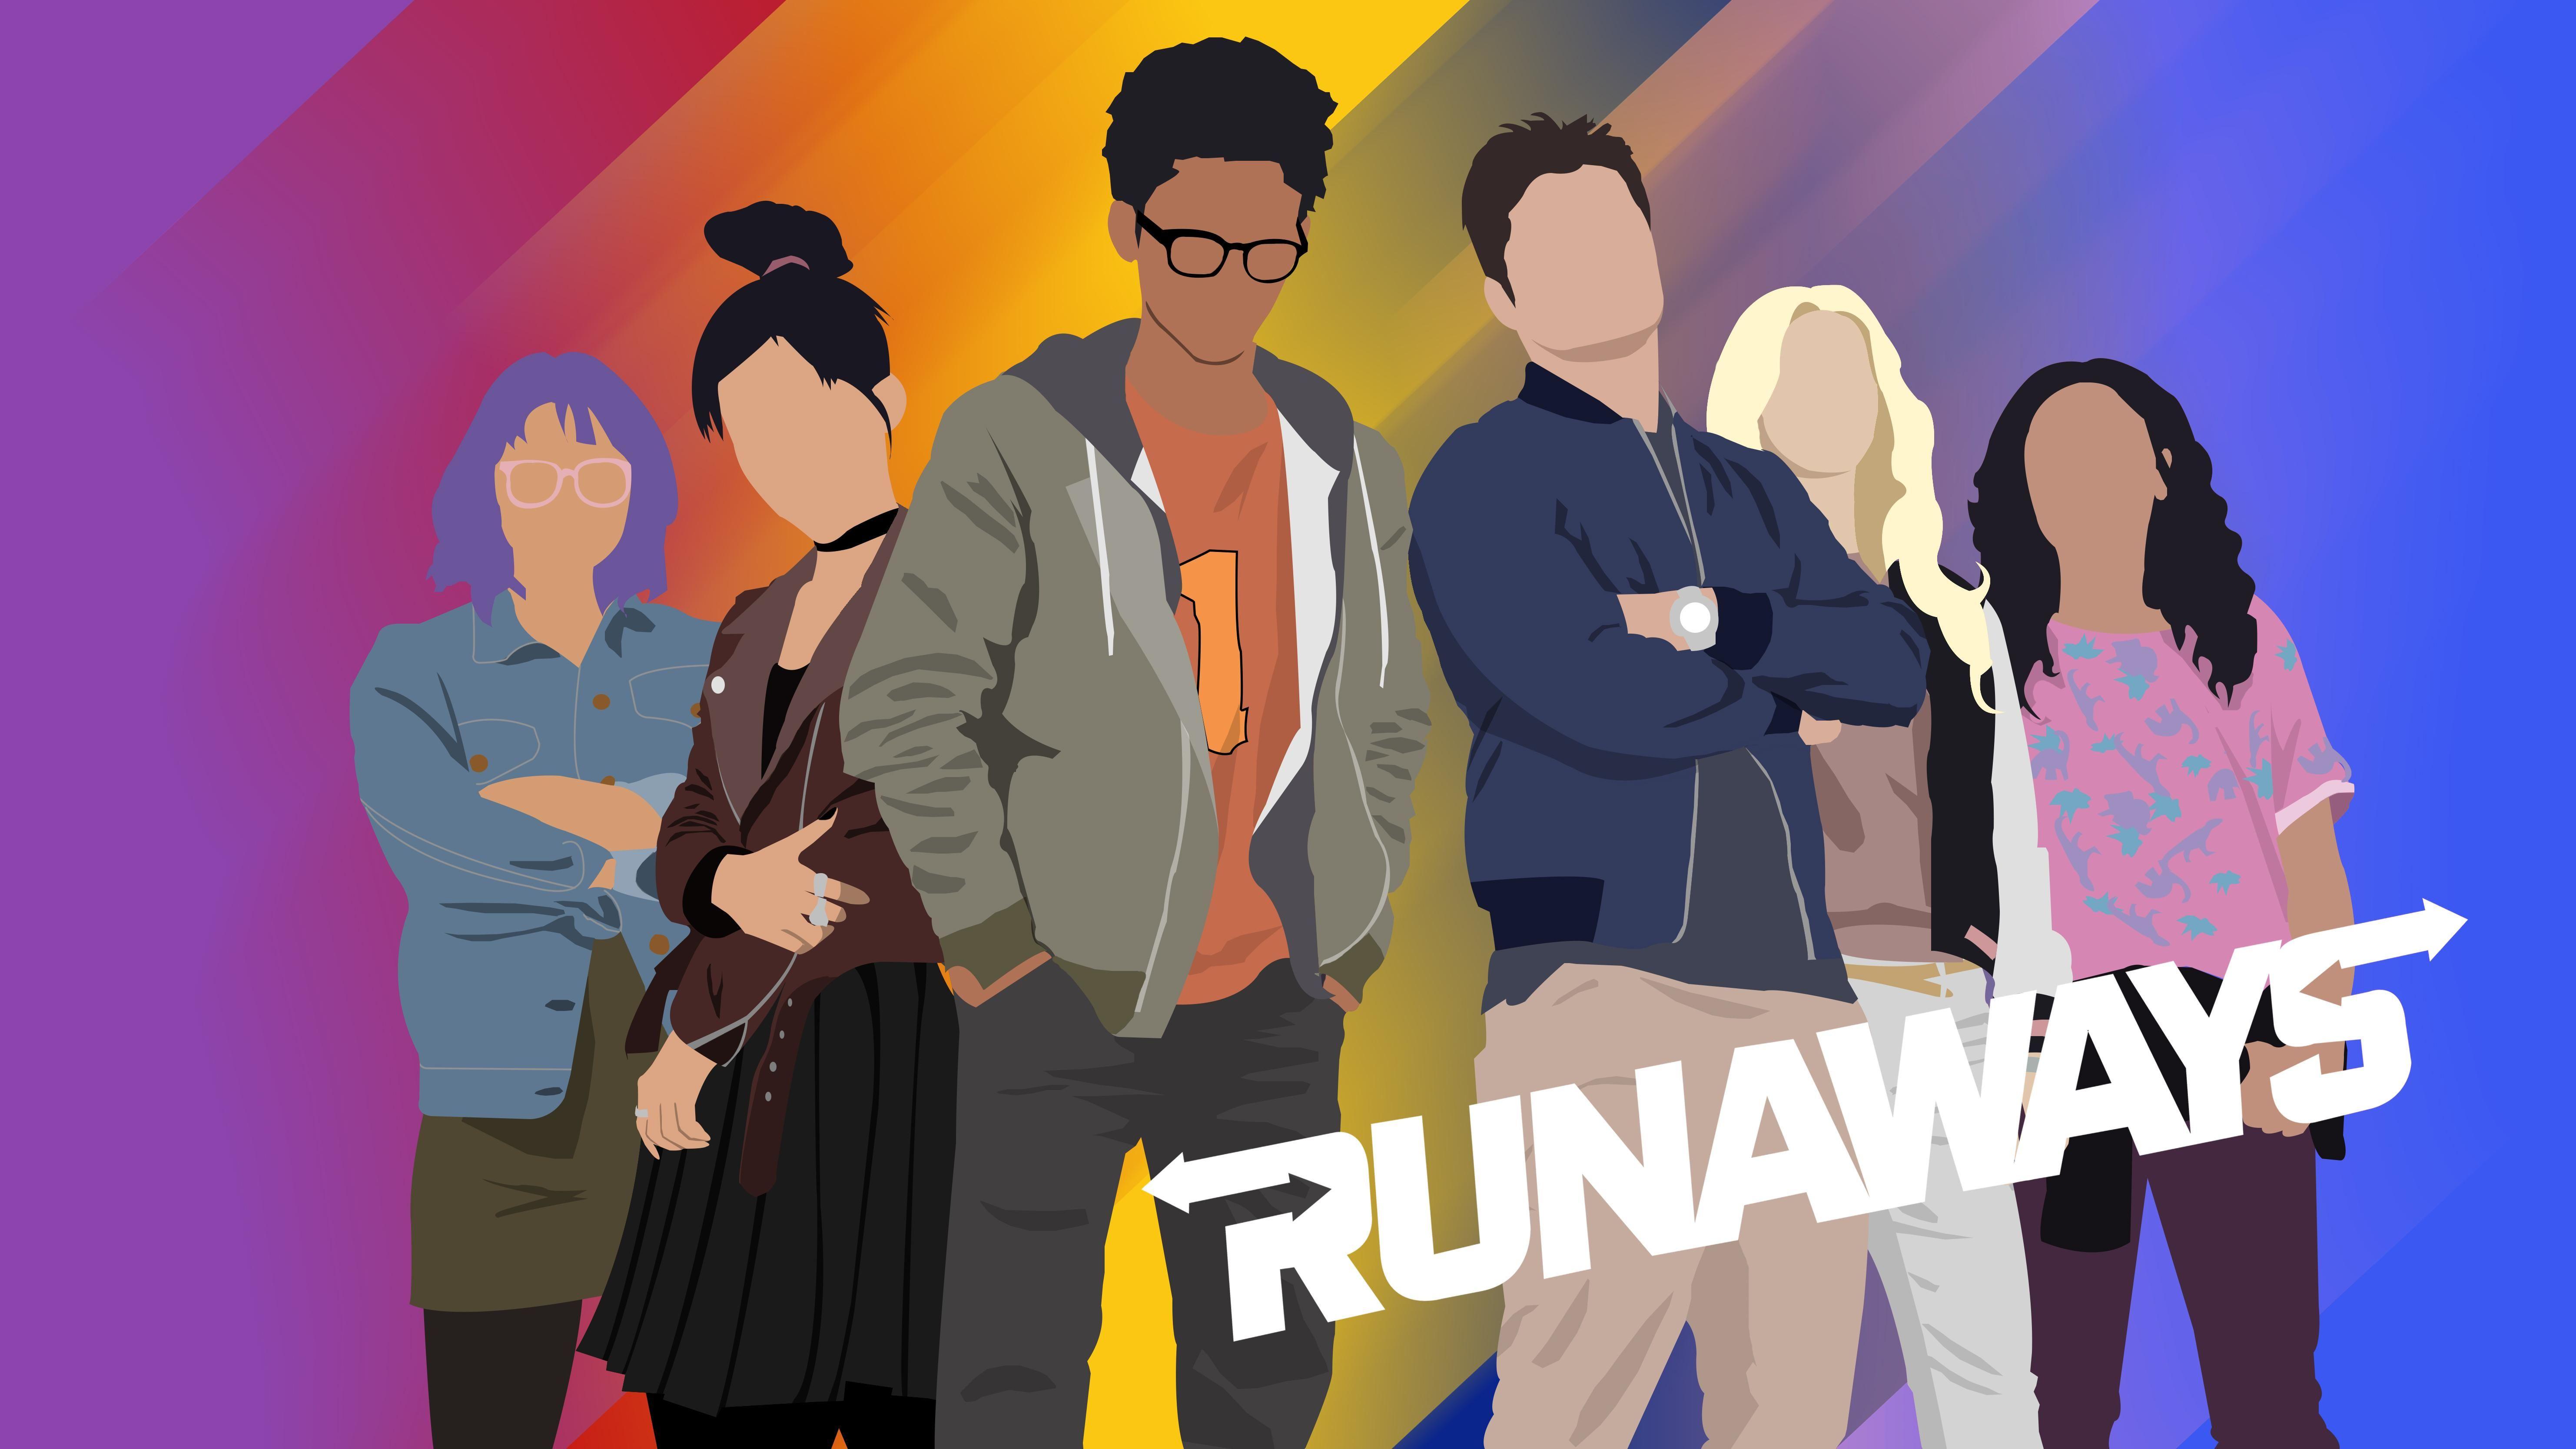 Made a vector art wallpaper! [Runaways]. Runaways marvel